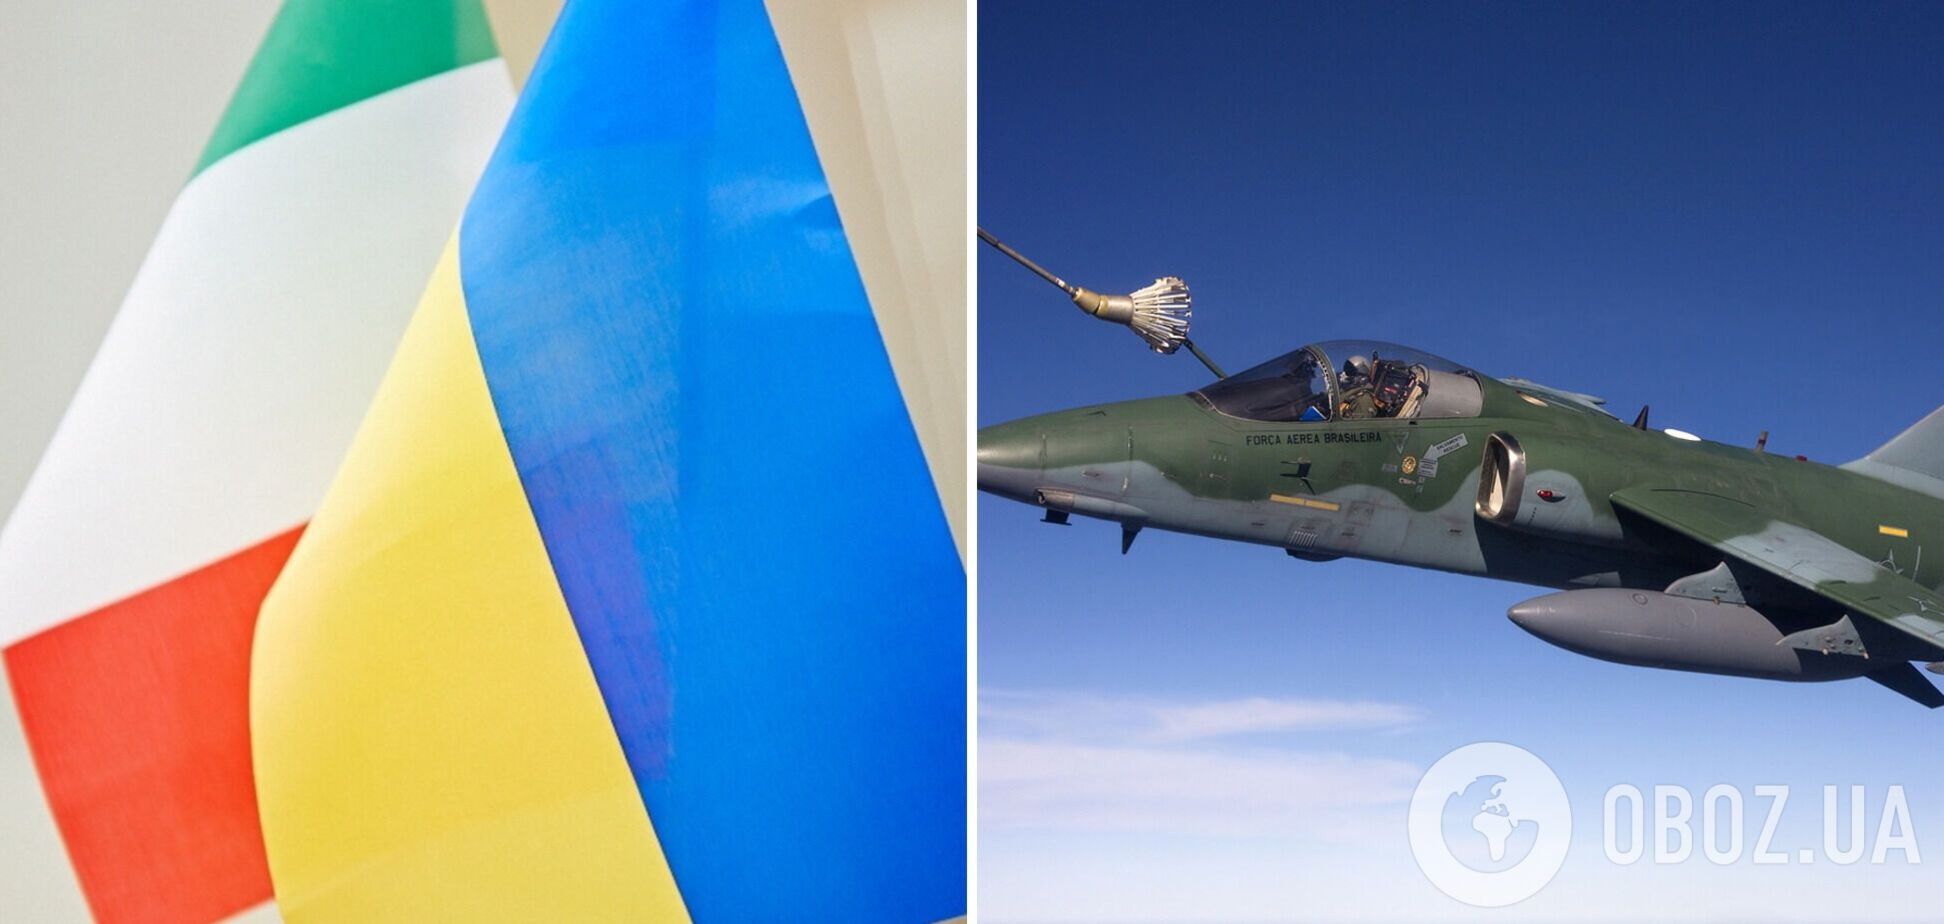 Италия может передать Украине боевые самолеты, но есть условие – La Reppublica